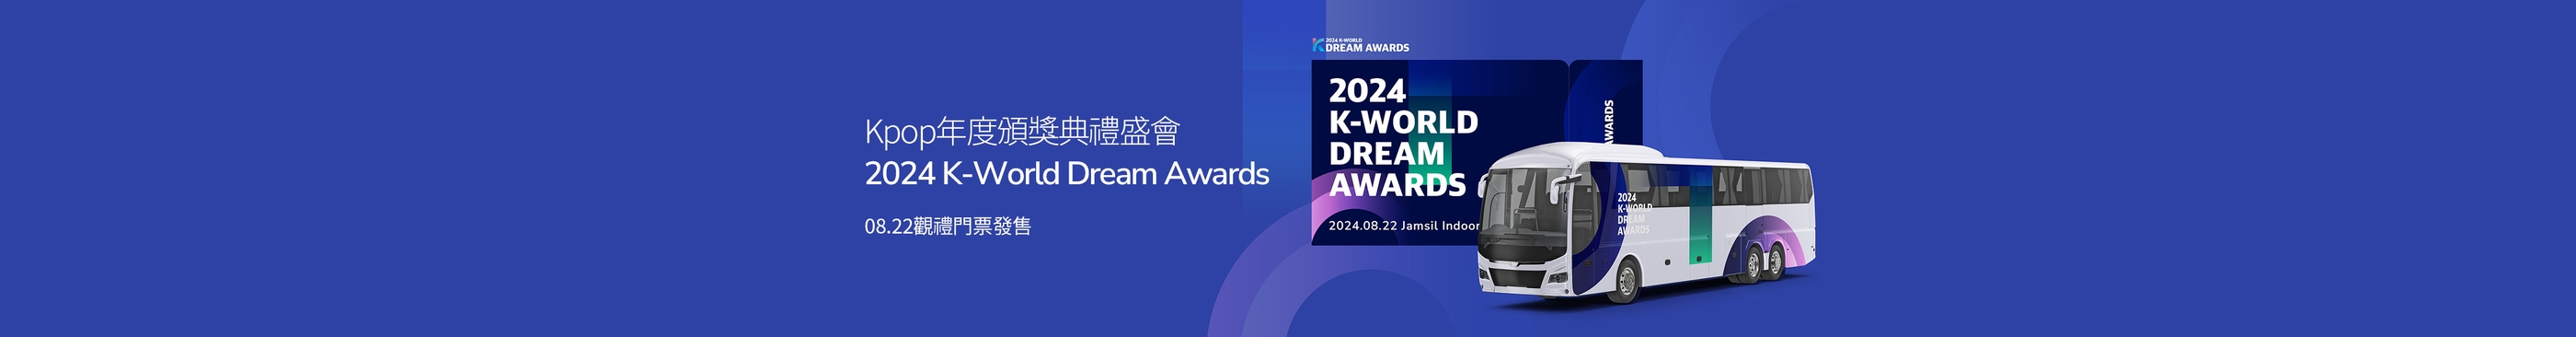 2024 K-World Dream Awards